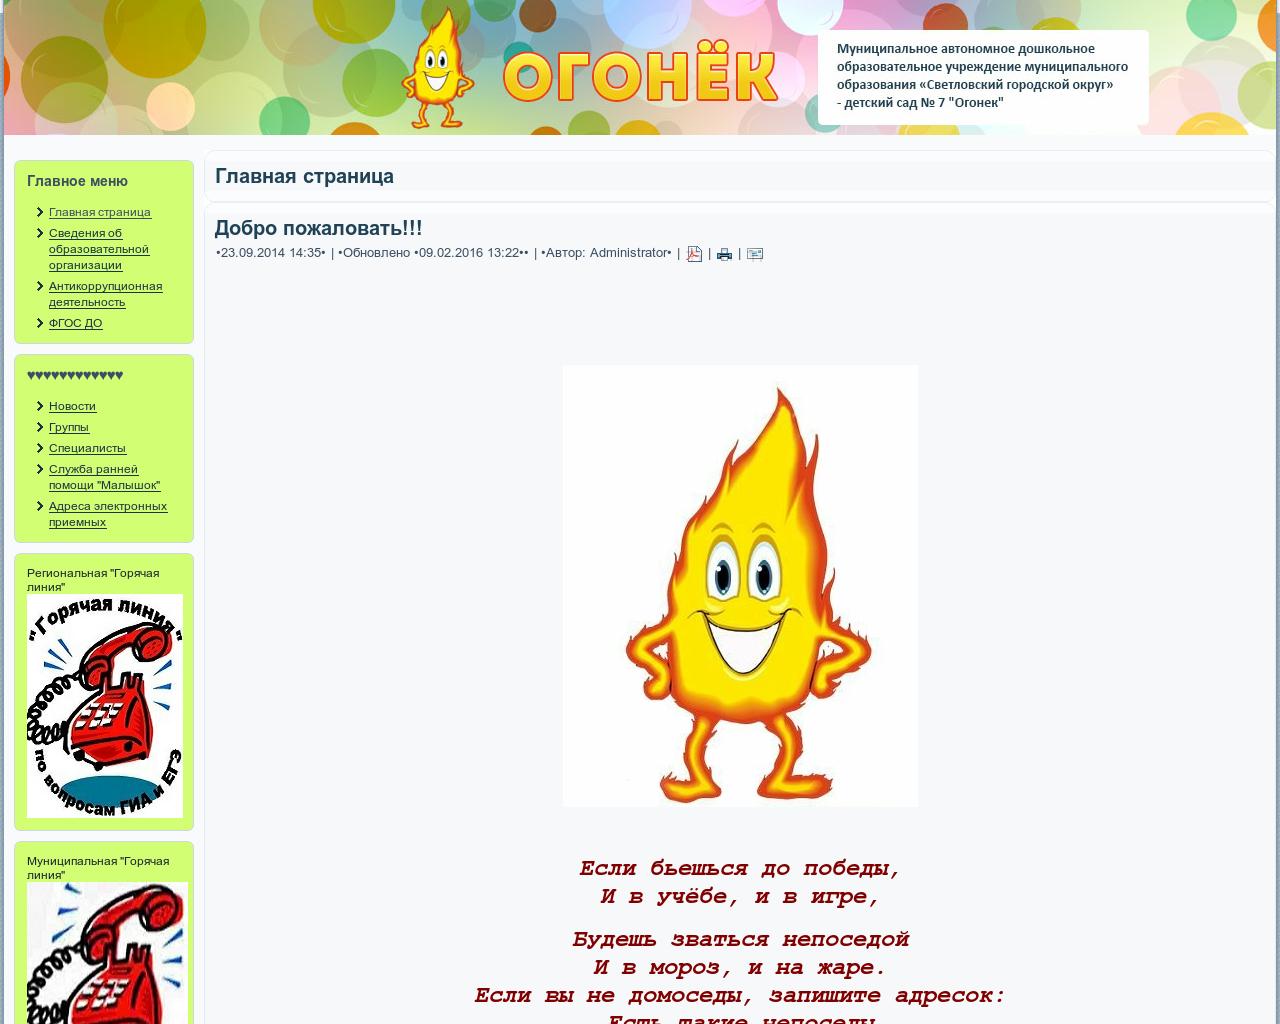 Изображение сайта sad-ogonek.ru в разрешении 1280x1024